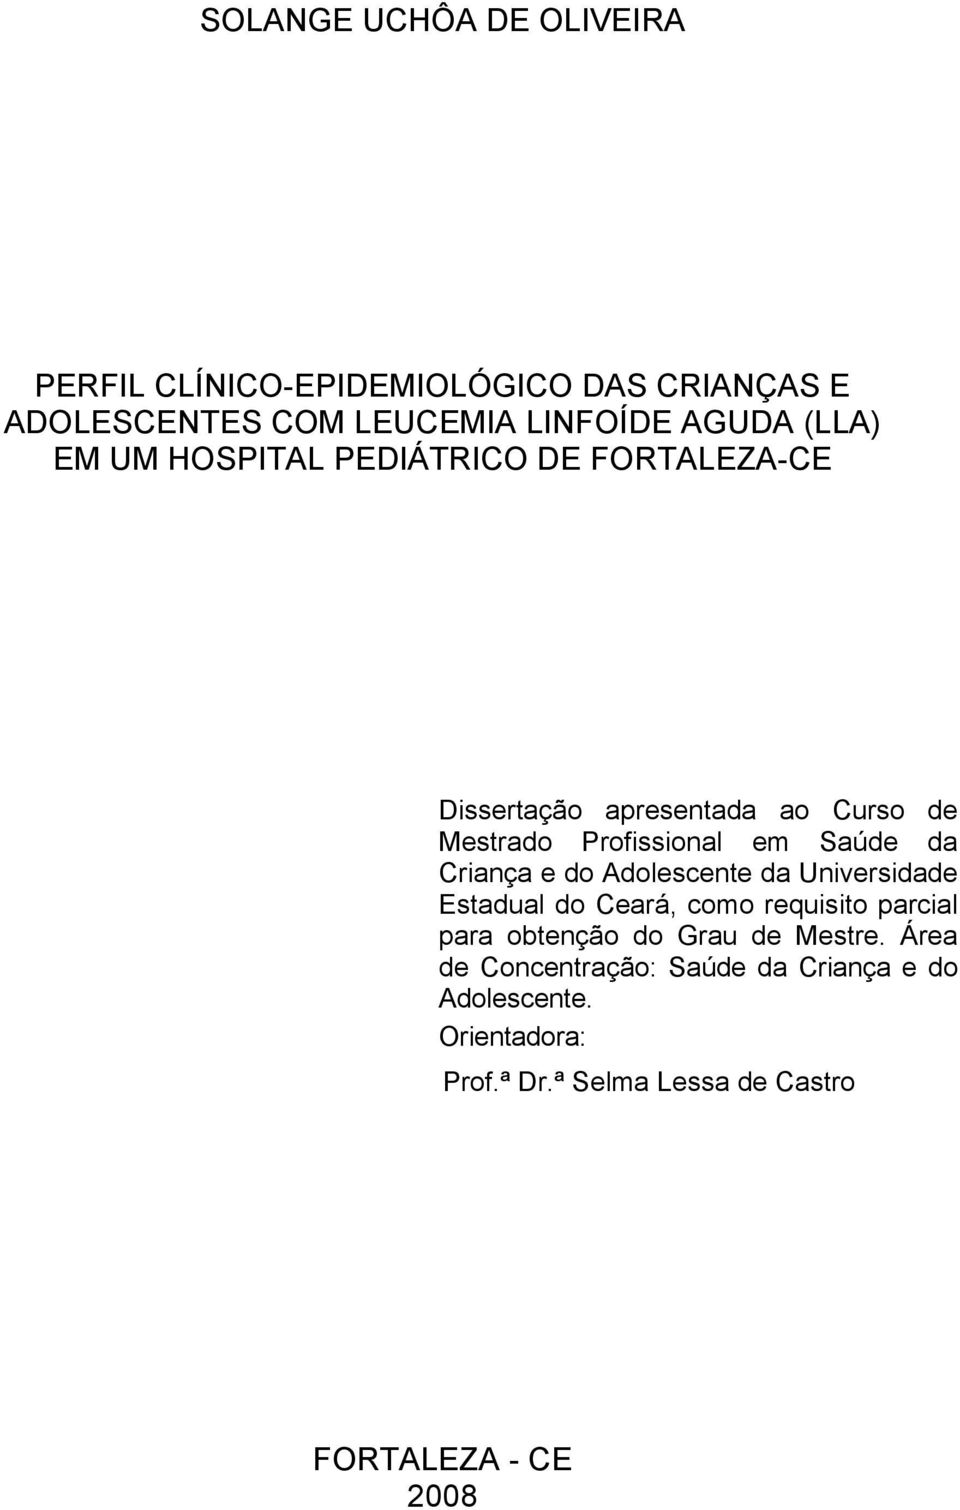 FORTALEZA-CE Dissertação apresentada ao Curso de Mestrado Profissional em Saúde da Criança e do Adolescente da Universidade Estadual do Ceará, como